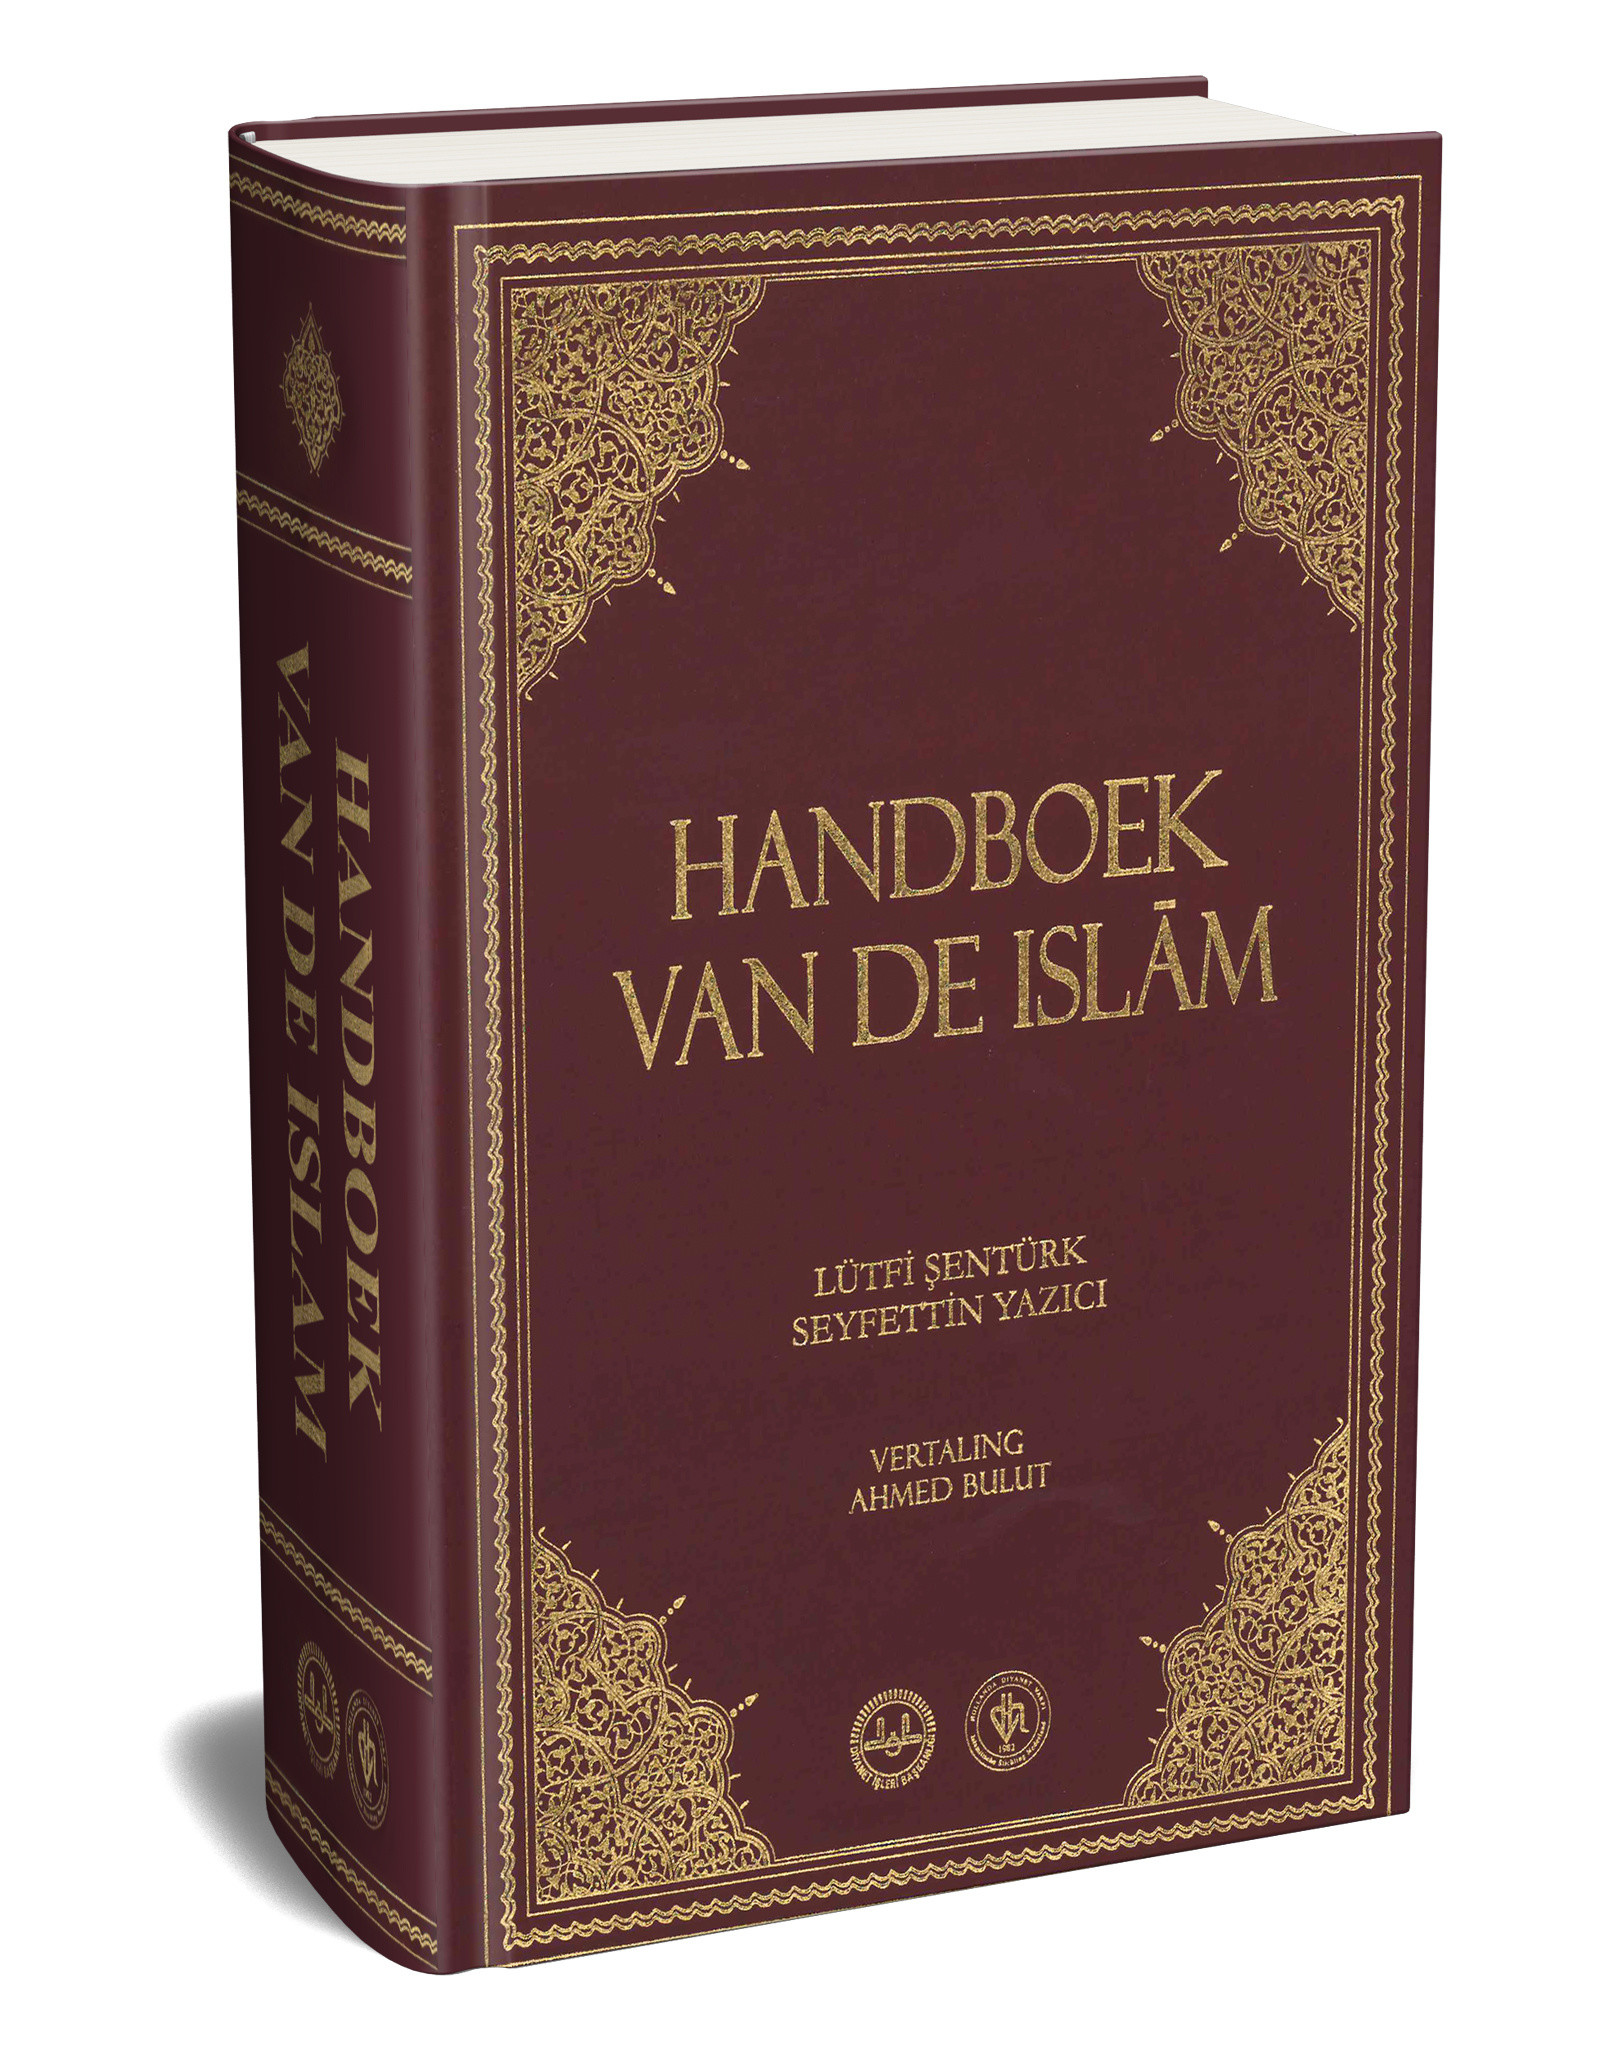 Handboek van de Islam